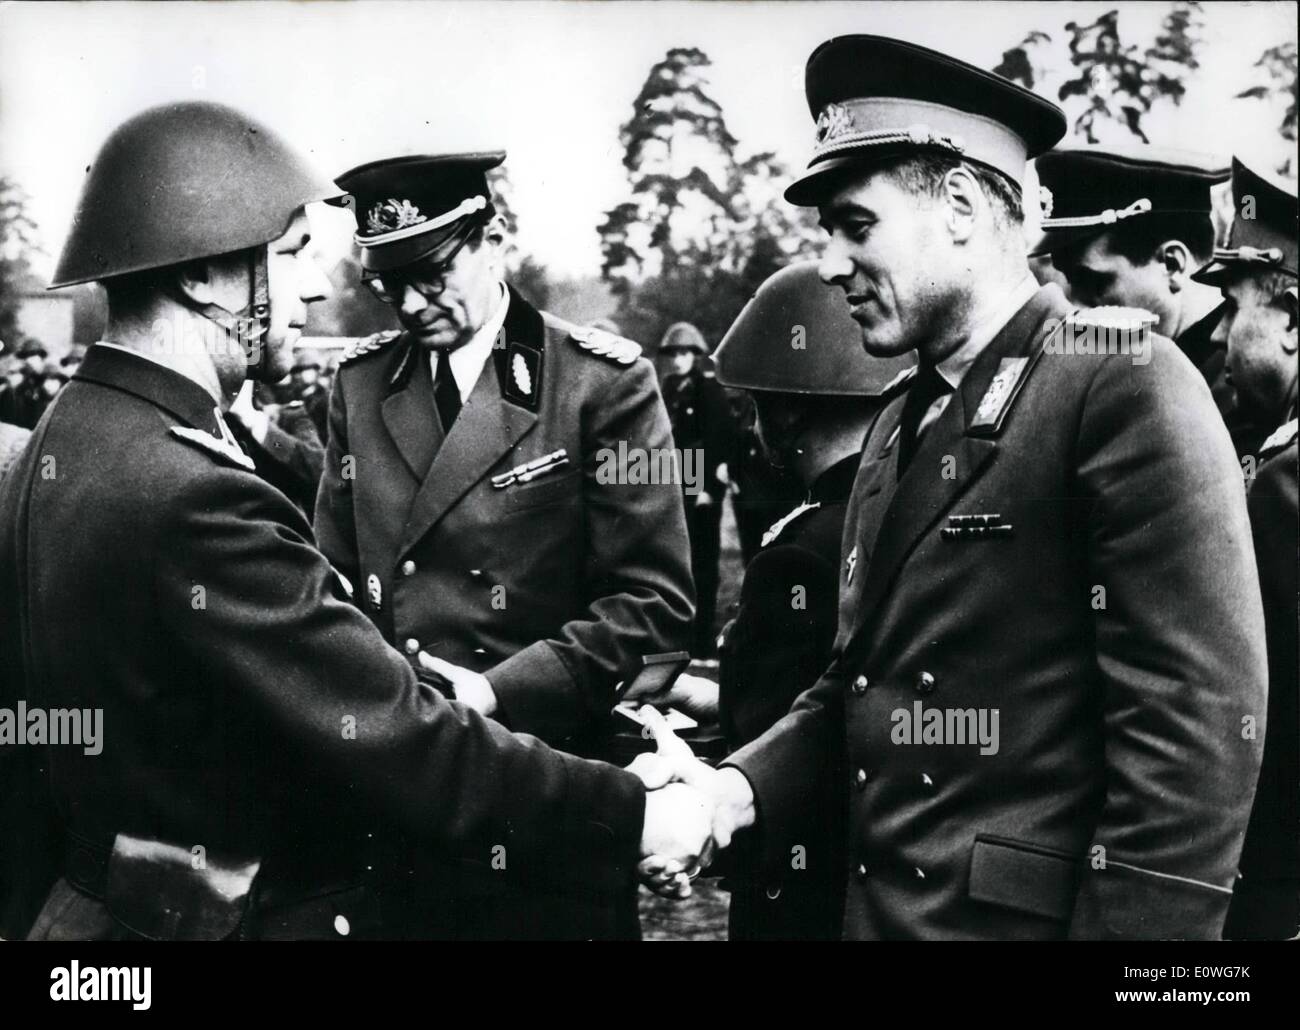 Septembre 09, 1962 - La première ville récemment nommé commandant de Berlin-Est ; Major-général Helmut Poppe a repris le 29 août aussi de la commande 2. Brigade frontière de la ''National'' de l'Armée du Peuple, commandé autrefois par le ministre de l'intérieur de la zone de l'Est. Ce suivi par la dissolution de l'administration centrale de la garnison des troupes soviétiques à Berlin. La photo montre le général Poppe à la prise en charge de la commande de la brigade qui Mederacke Heinz majeur féliciter a été décorée avec la distinction d'honneur de la ''Volkspolizei' Banque D'Images